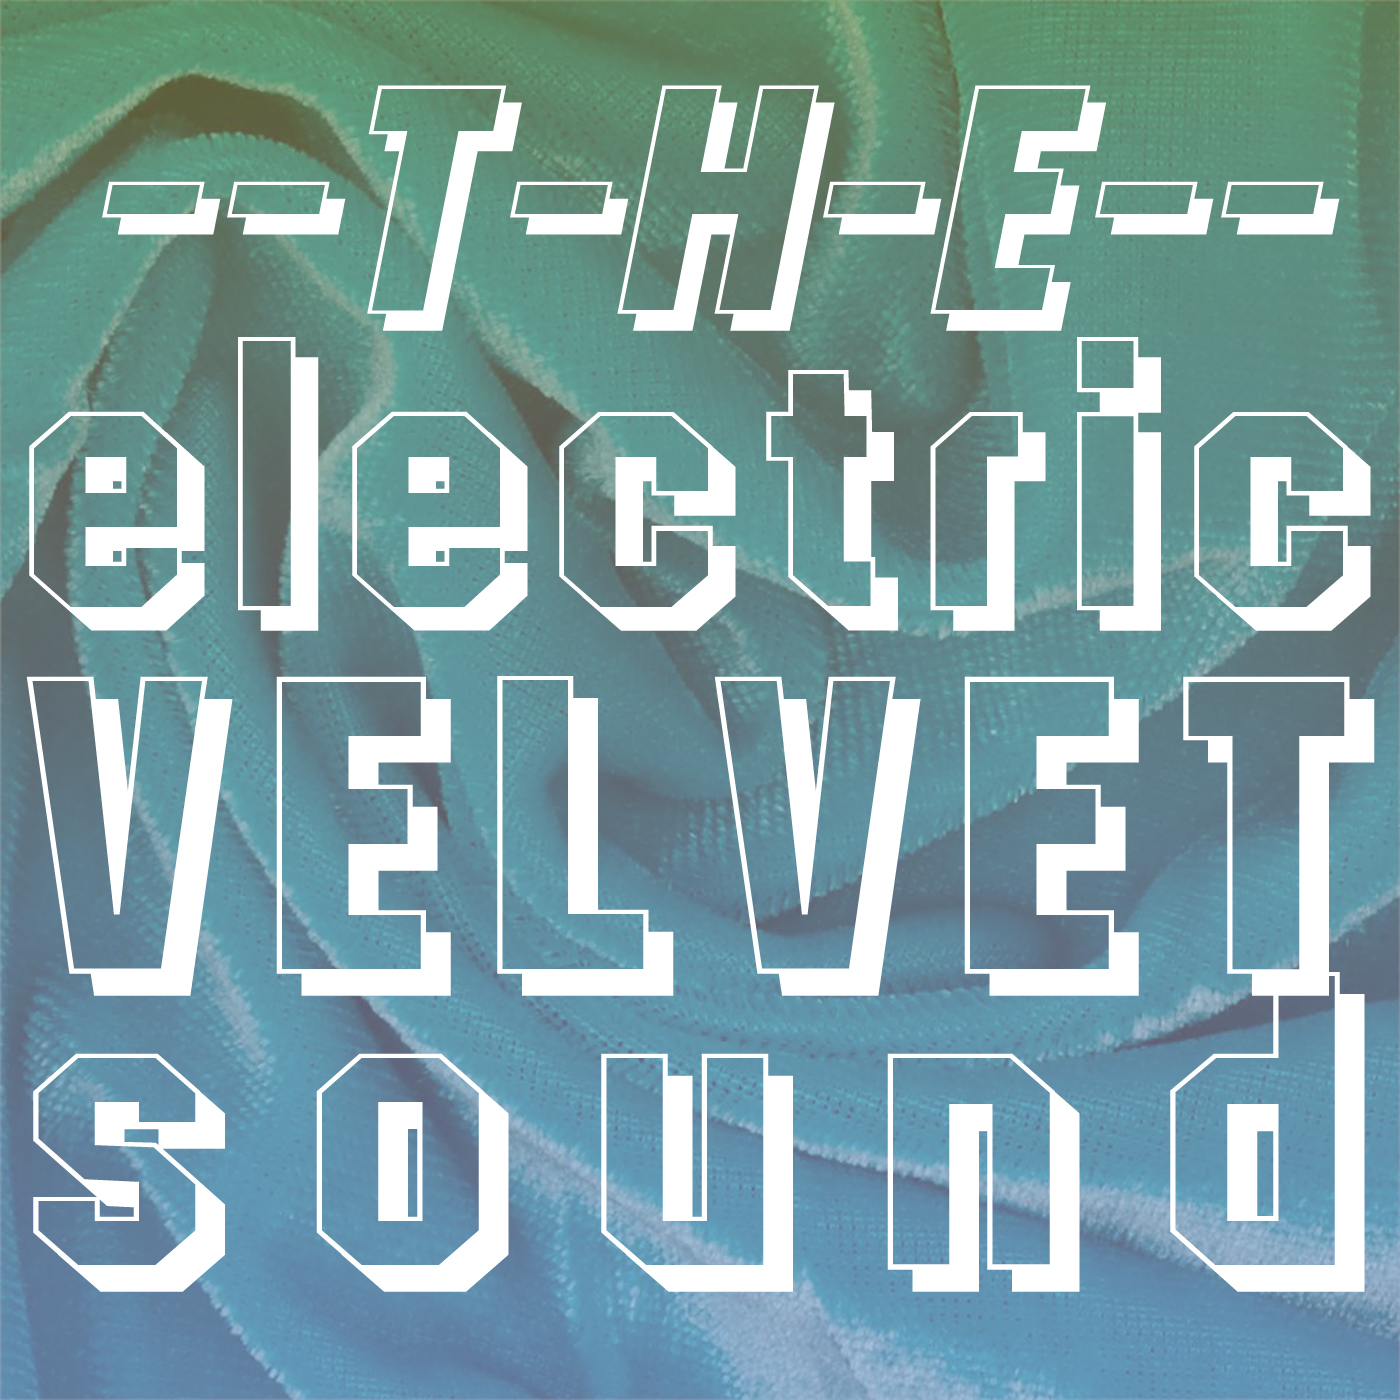 The Electric Velvet Sound